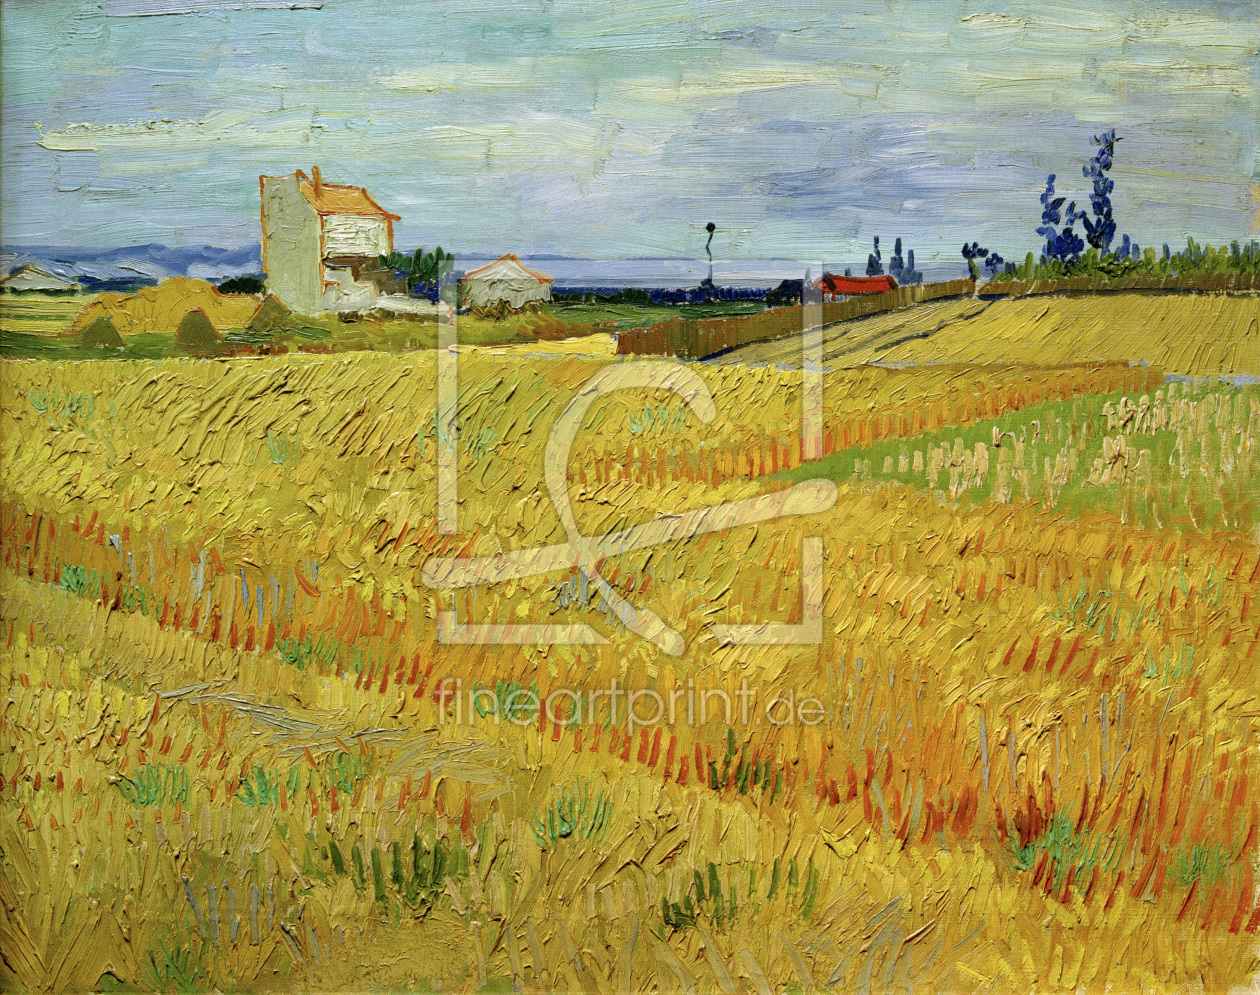 Bild-Nr.: 30003240 V.v.Gogh, Wheat Field / Paint./ 1888 erstellt von van Gogh, Vincent